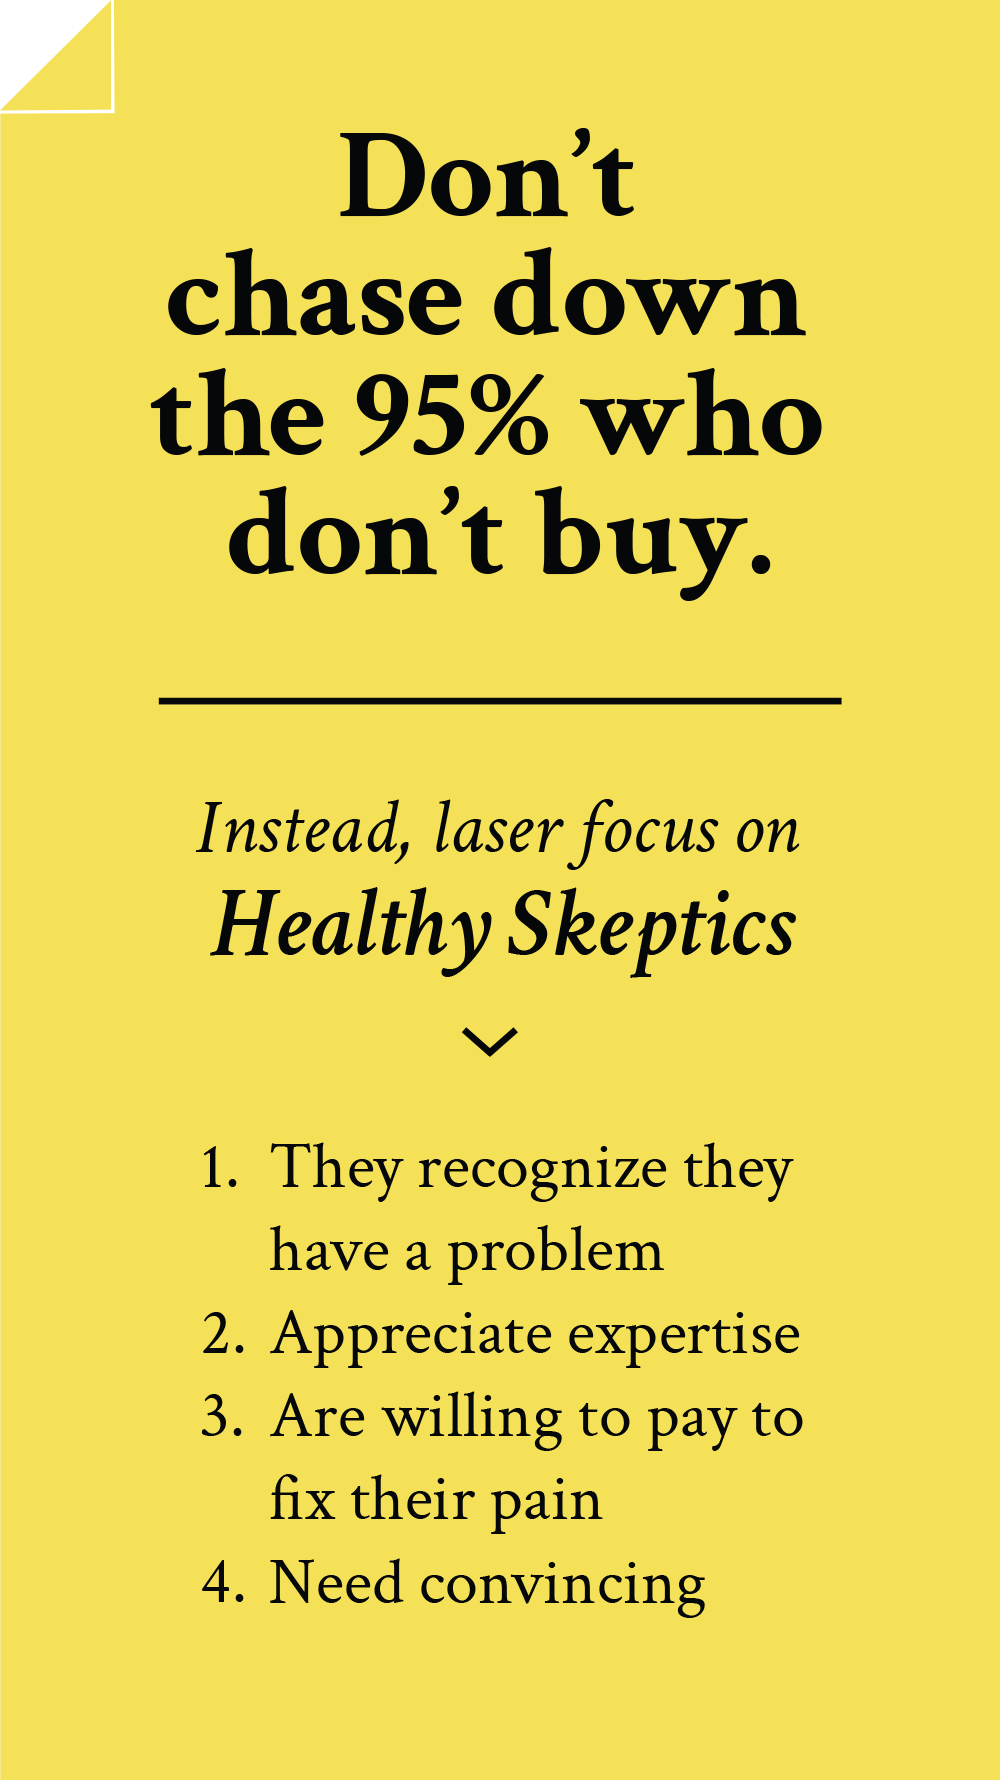 Healthy Skeptics